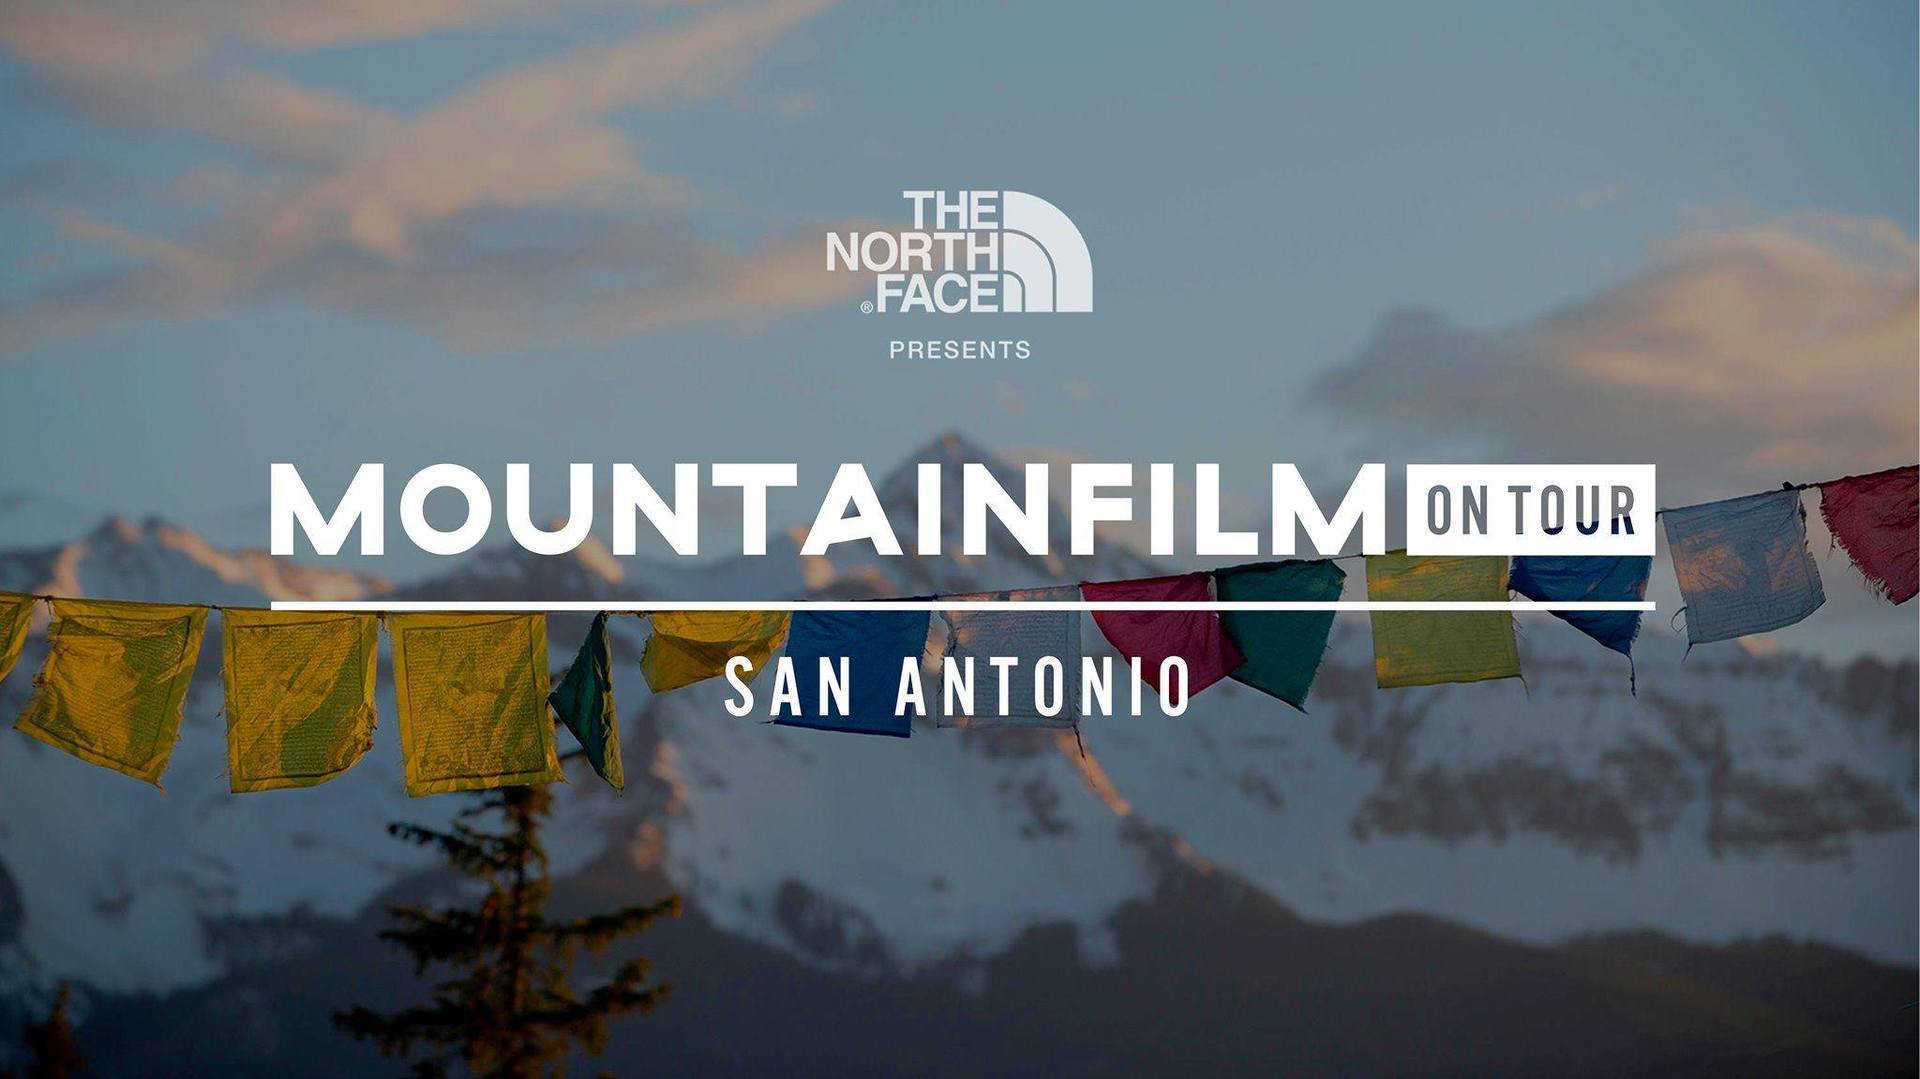 Mountainfilm on Tour- San Antonio, San Antonio, Texas, United States